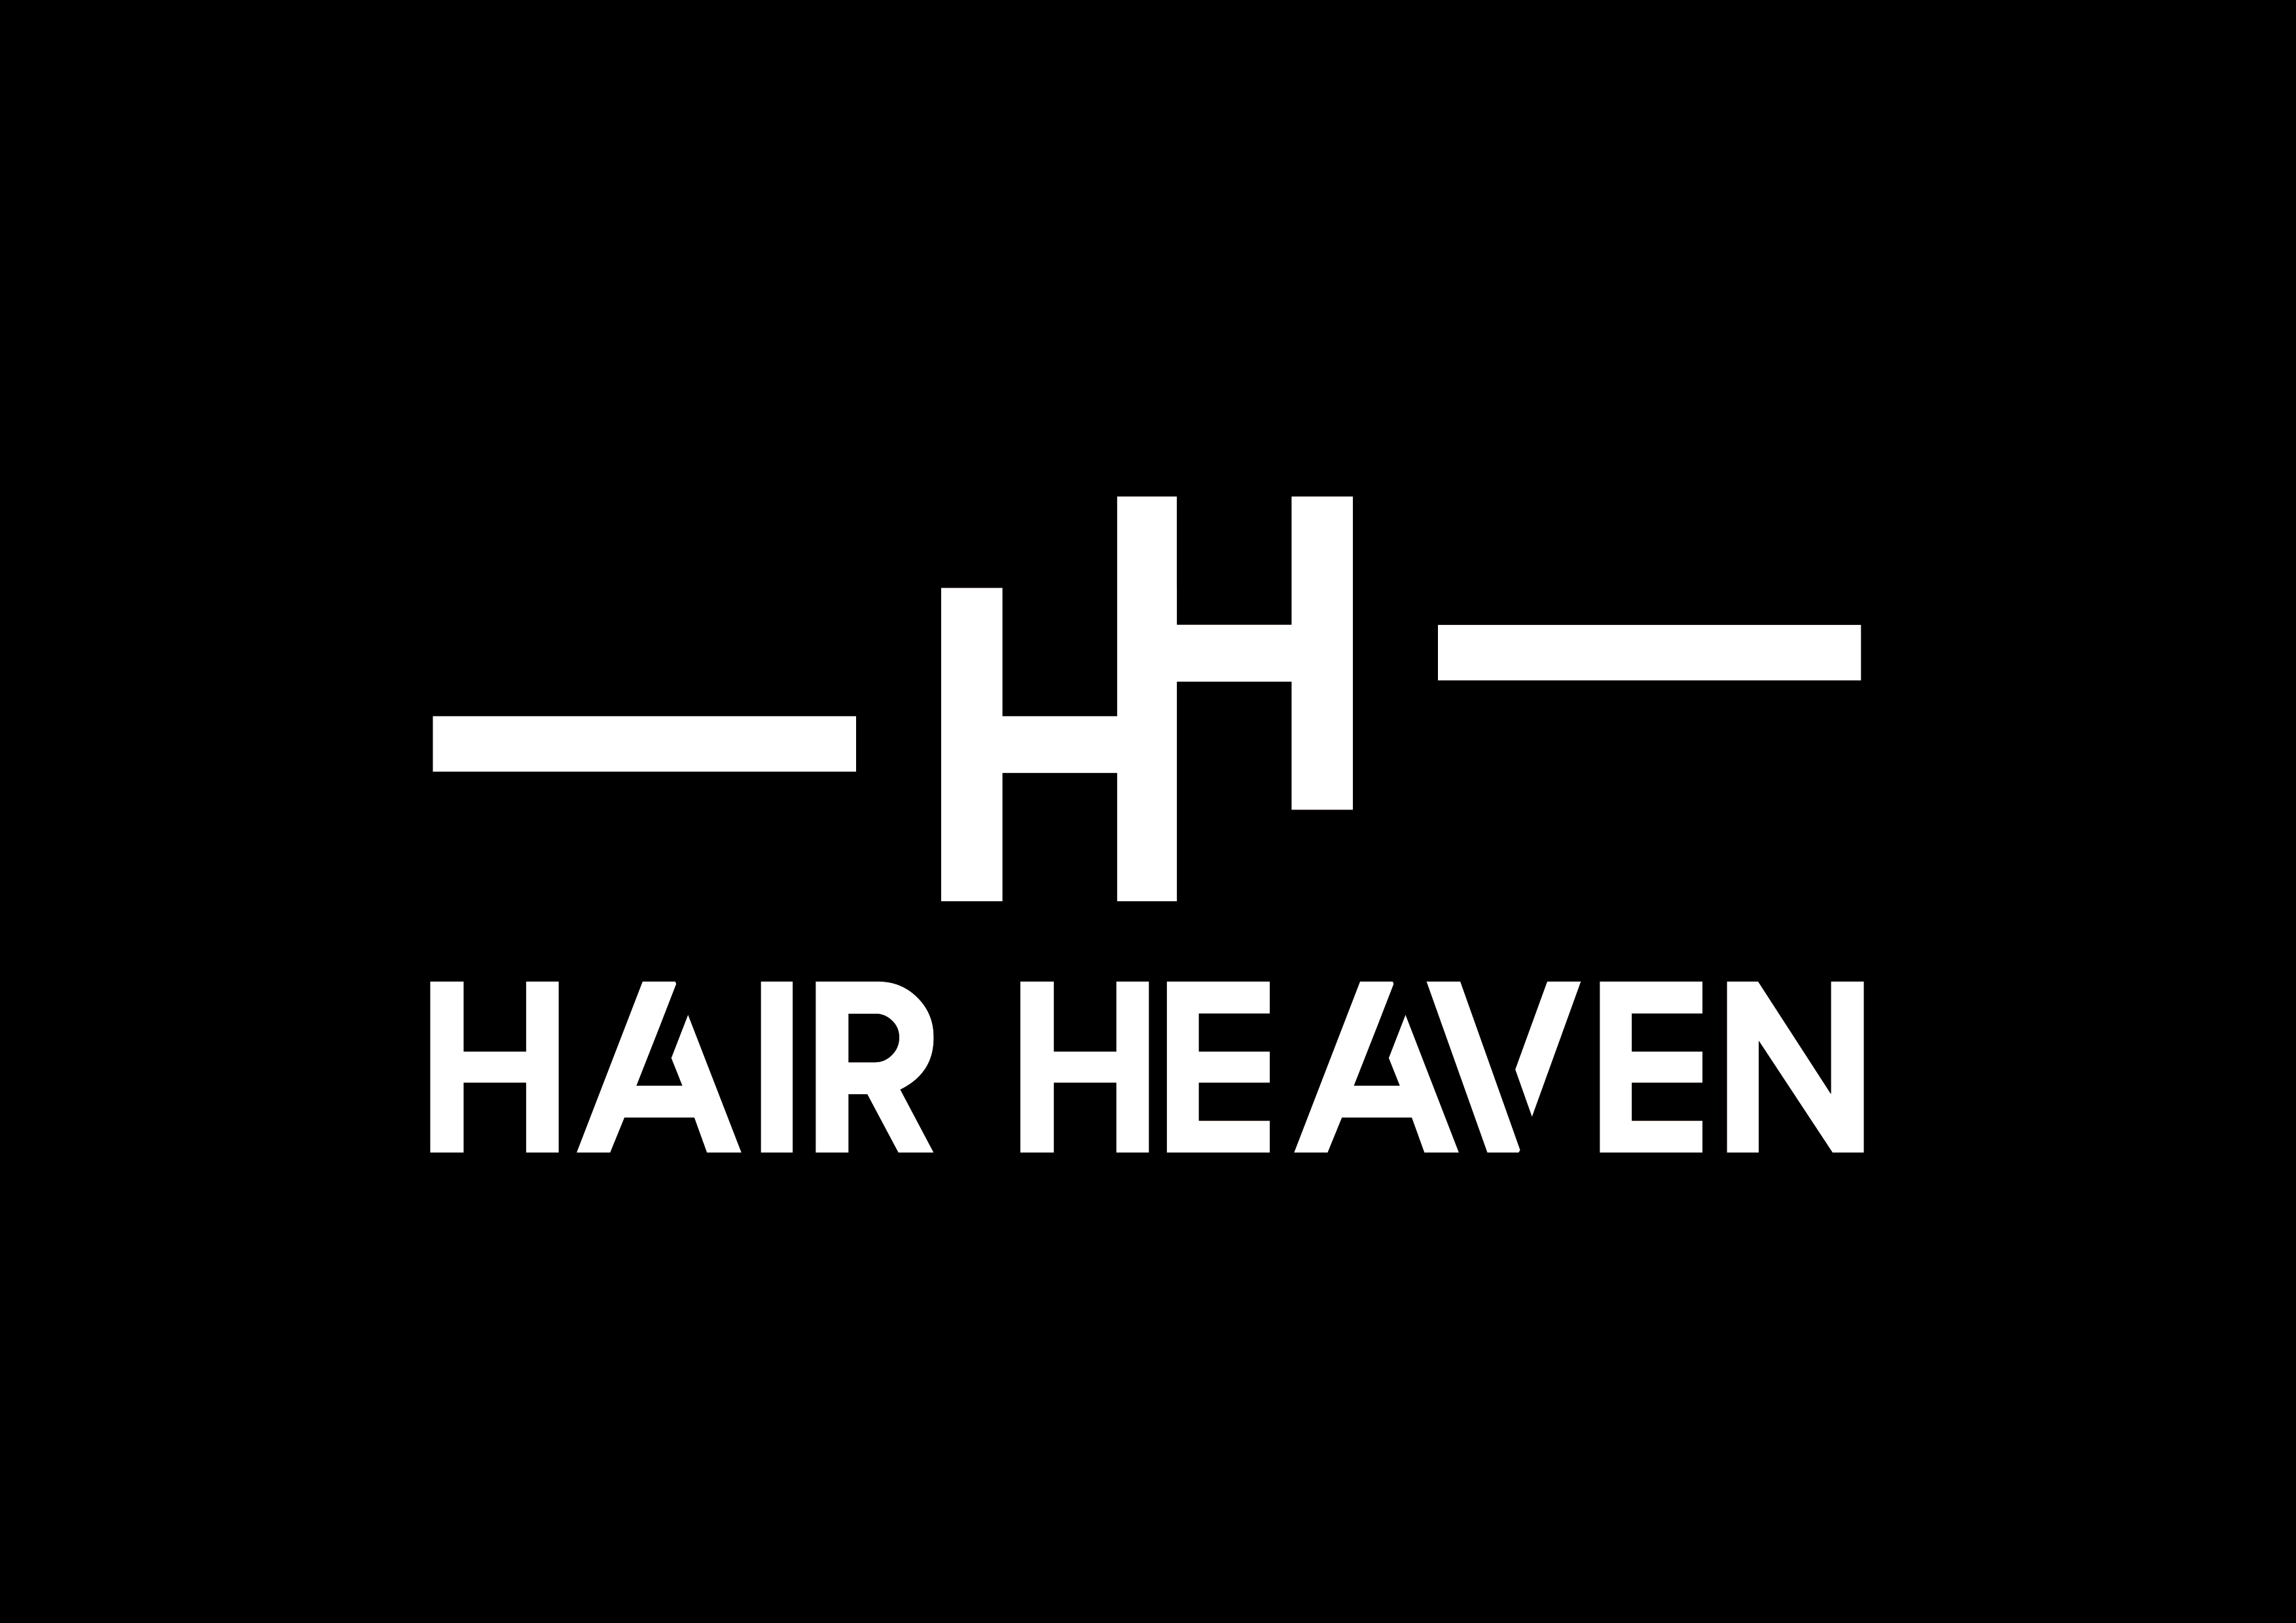 Hair heaven